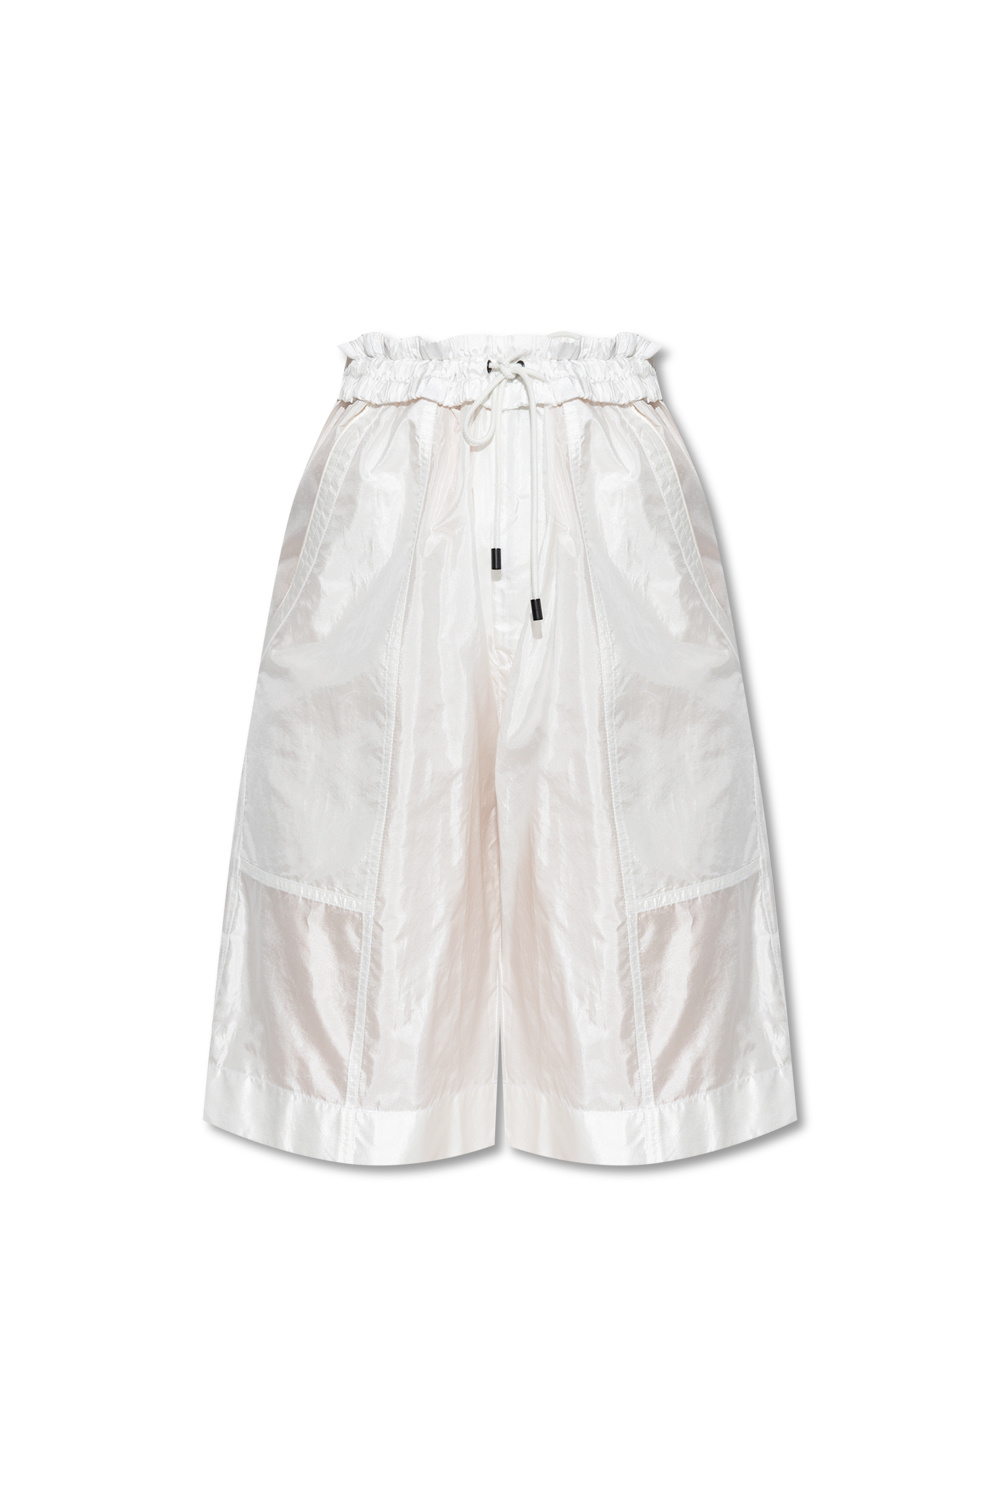 Isabel Marant ‘Laiora’ shorts